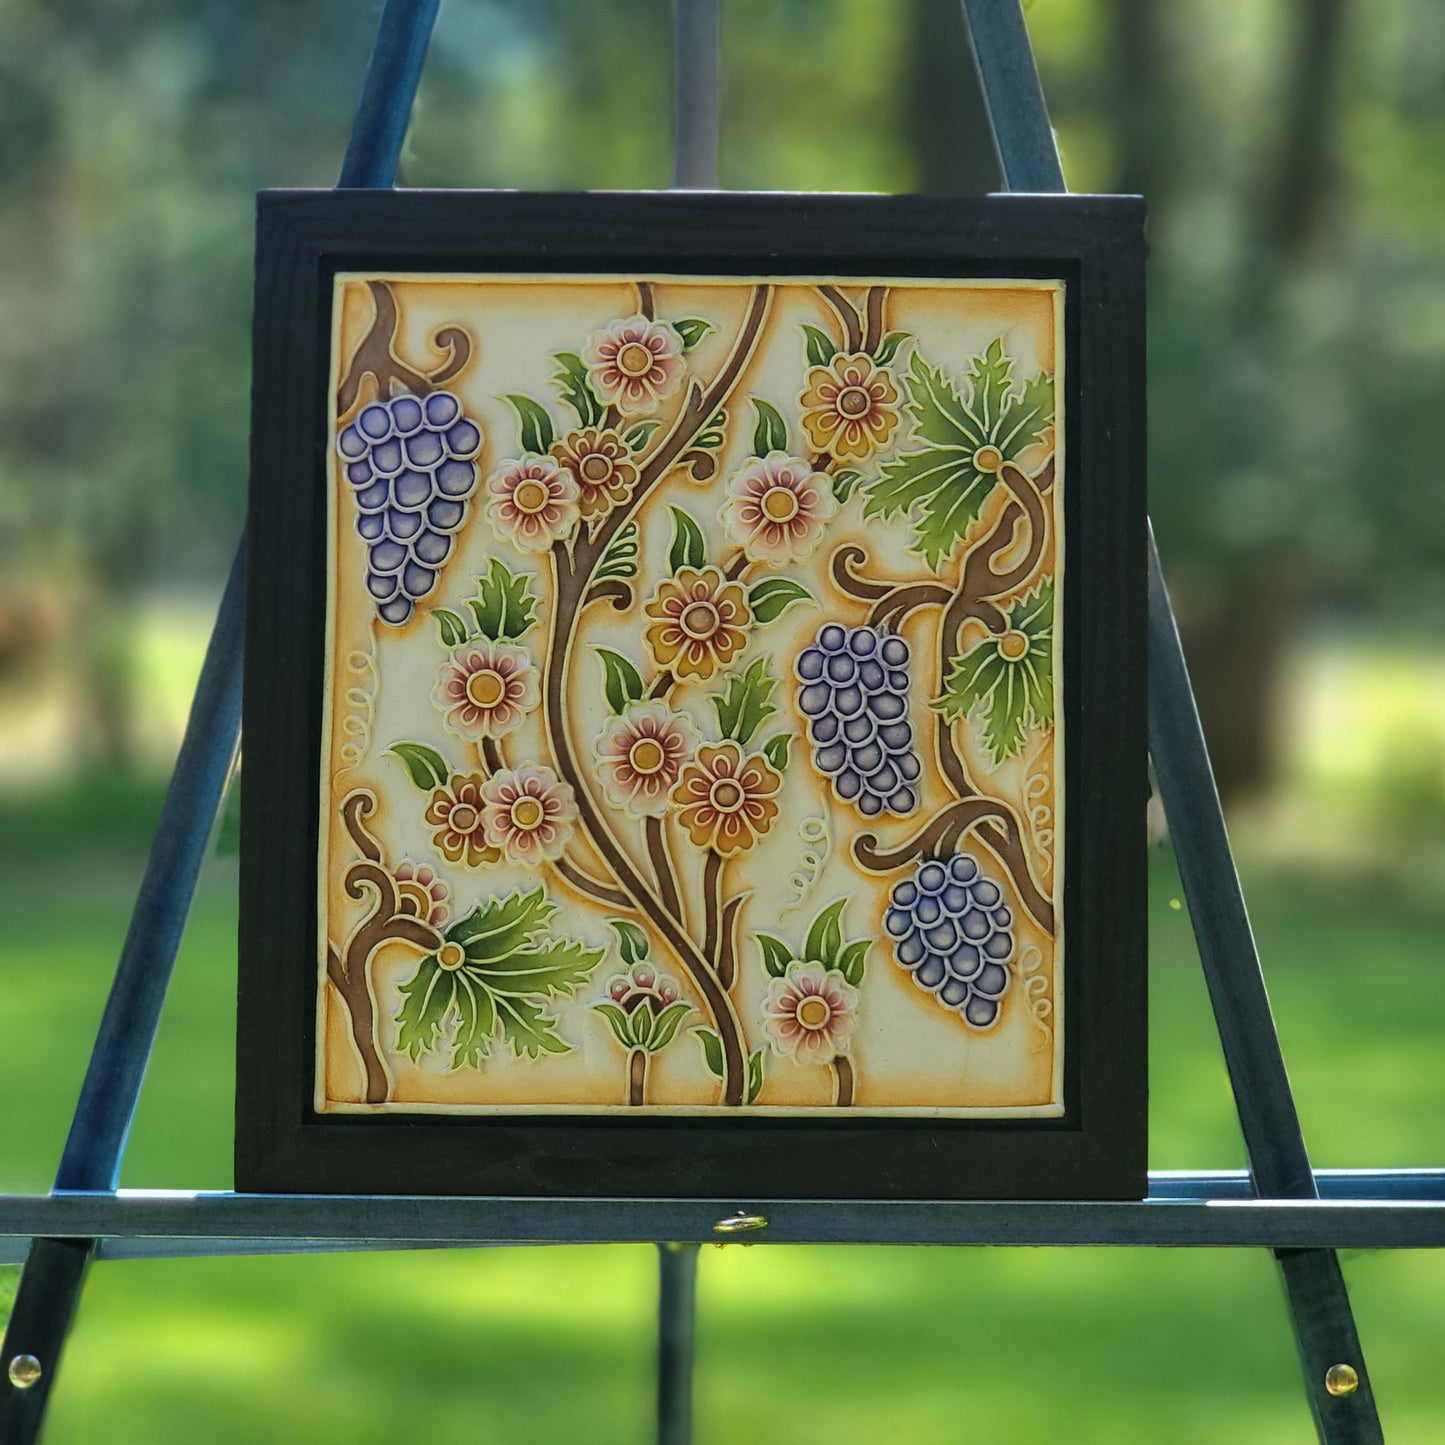 Grapes Relief Art Frame